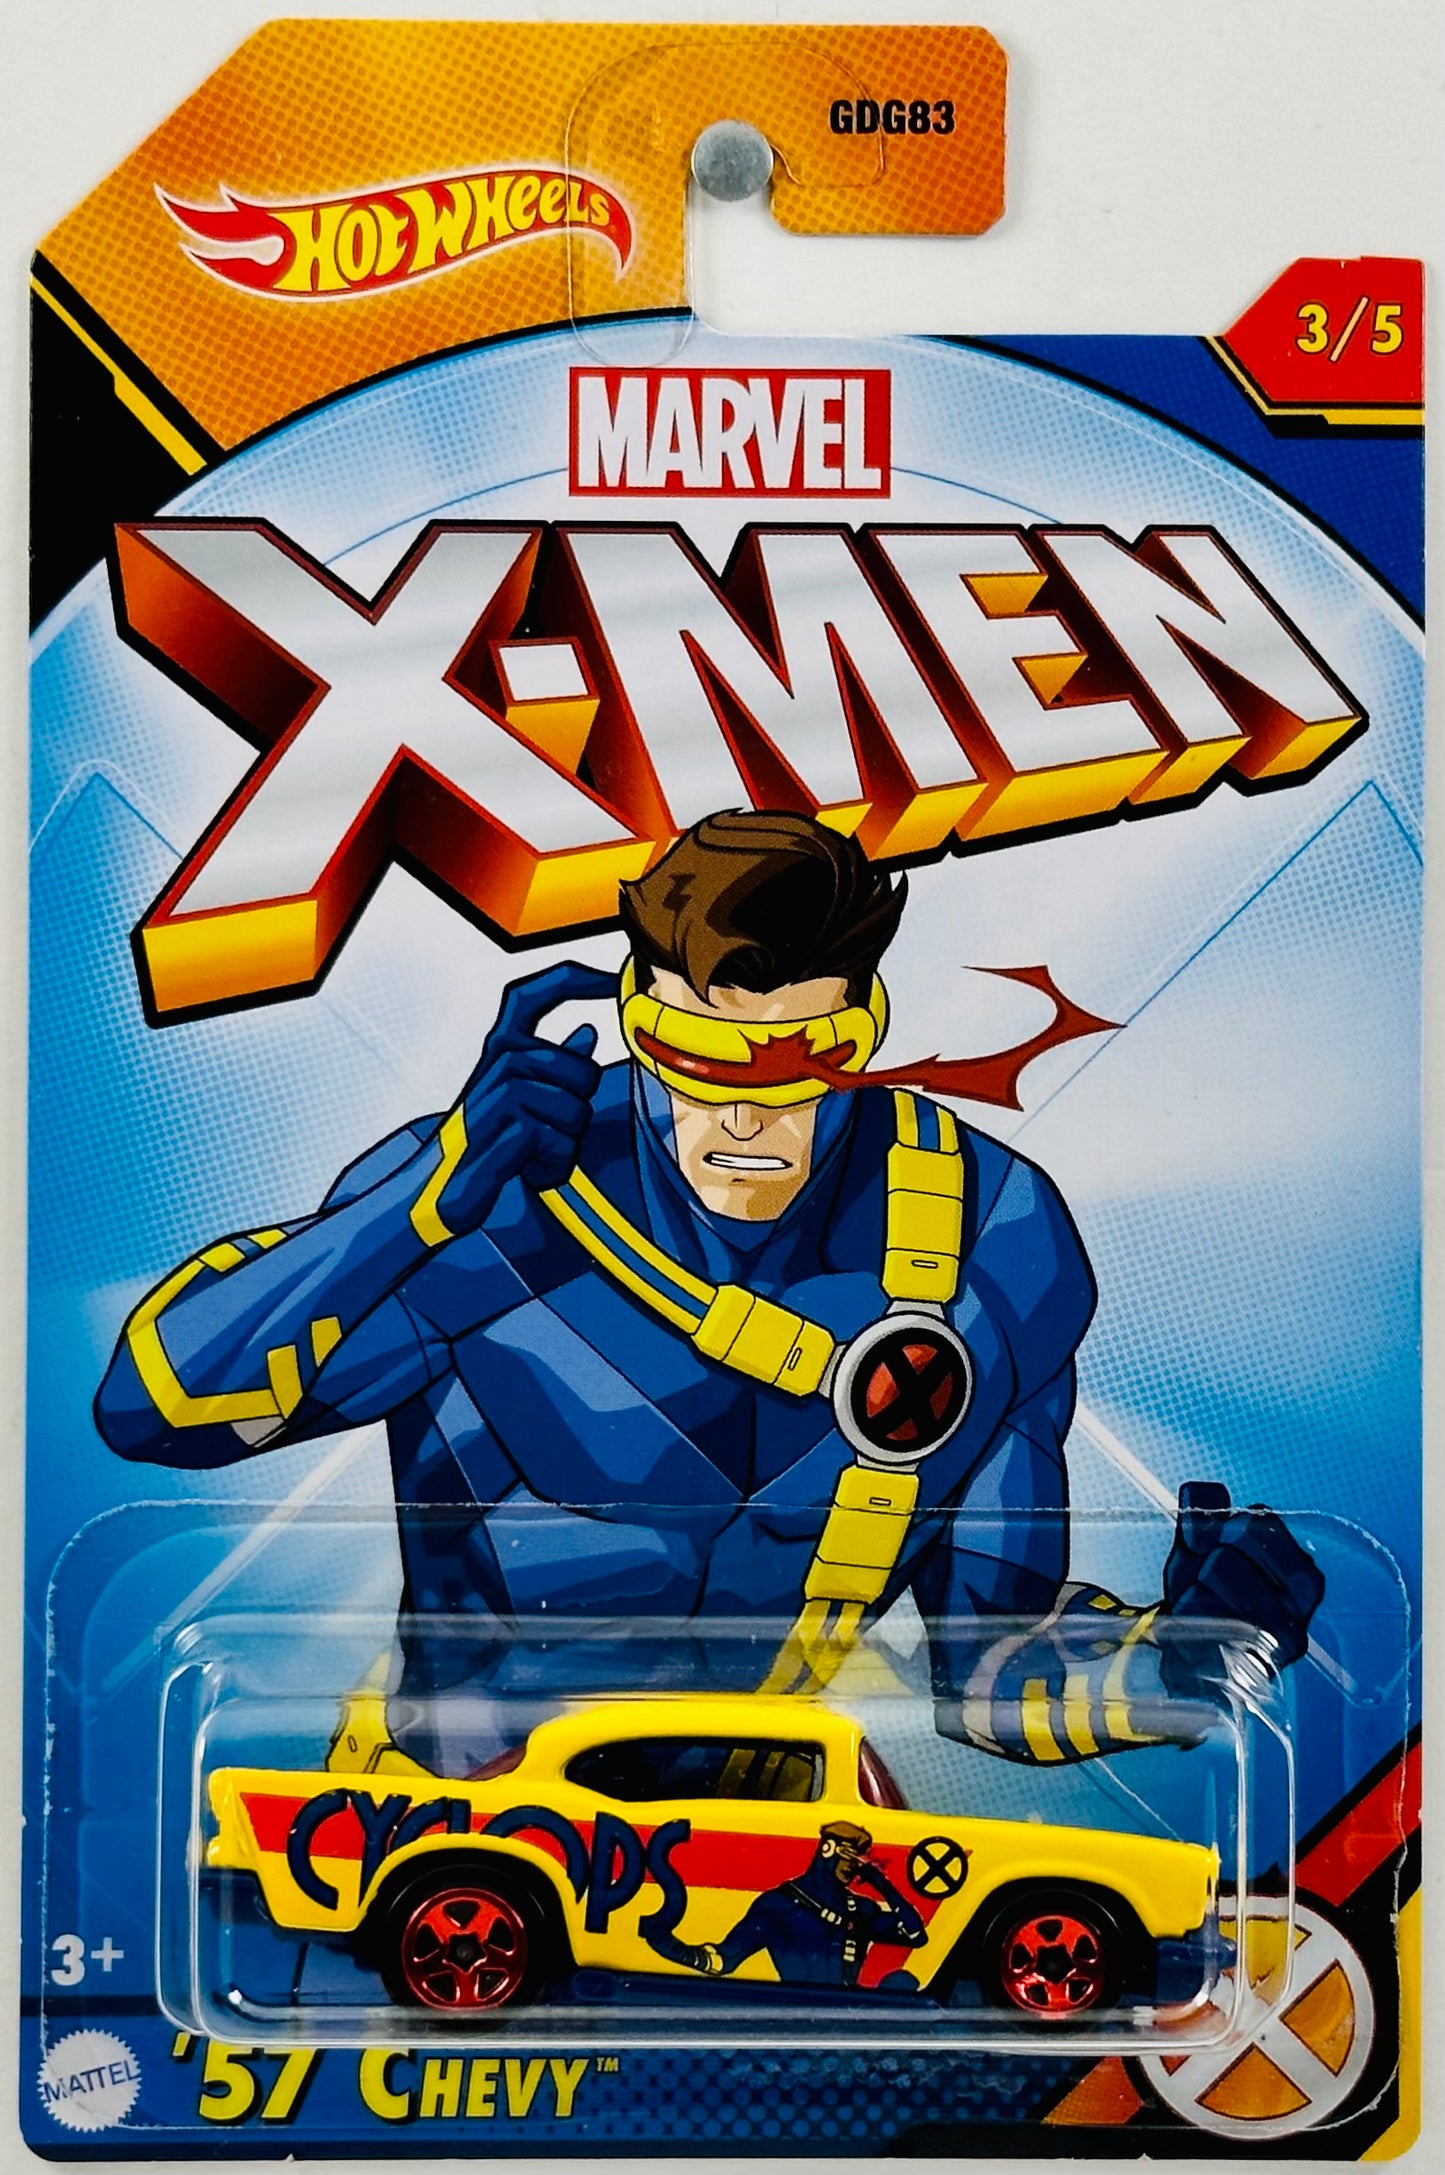 Hot Wheels 2023 - X-Men 03/05 - '57 Chevy - Yellow - Cyclops - Marvel - Walmart Exclusive